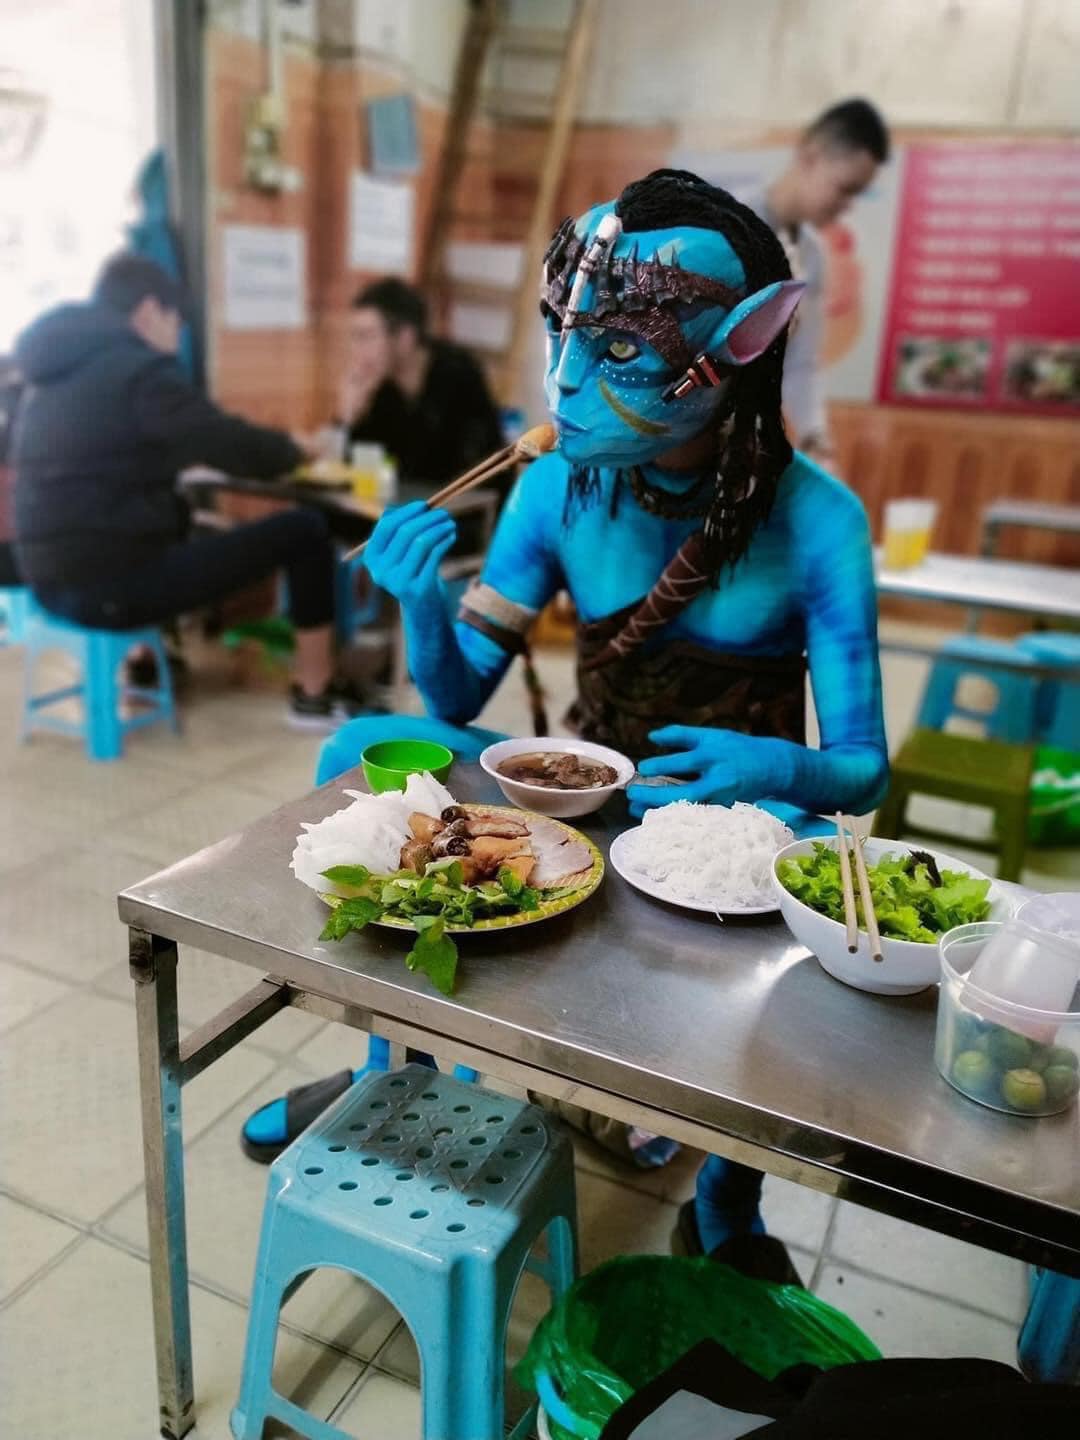 Lan truyền hình ảnh nhân vật trong Avatar xuất hiện trên đường phố Việt Nam  khiến CĐM dở khóc dở cười  Netizen  Việt Giải Trí